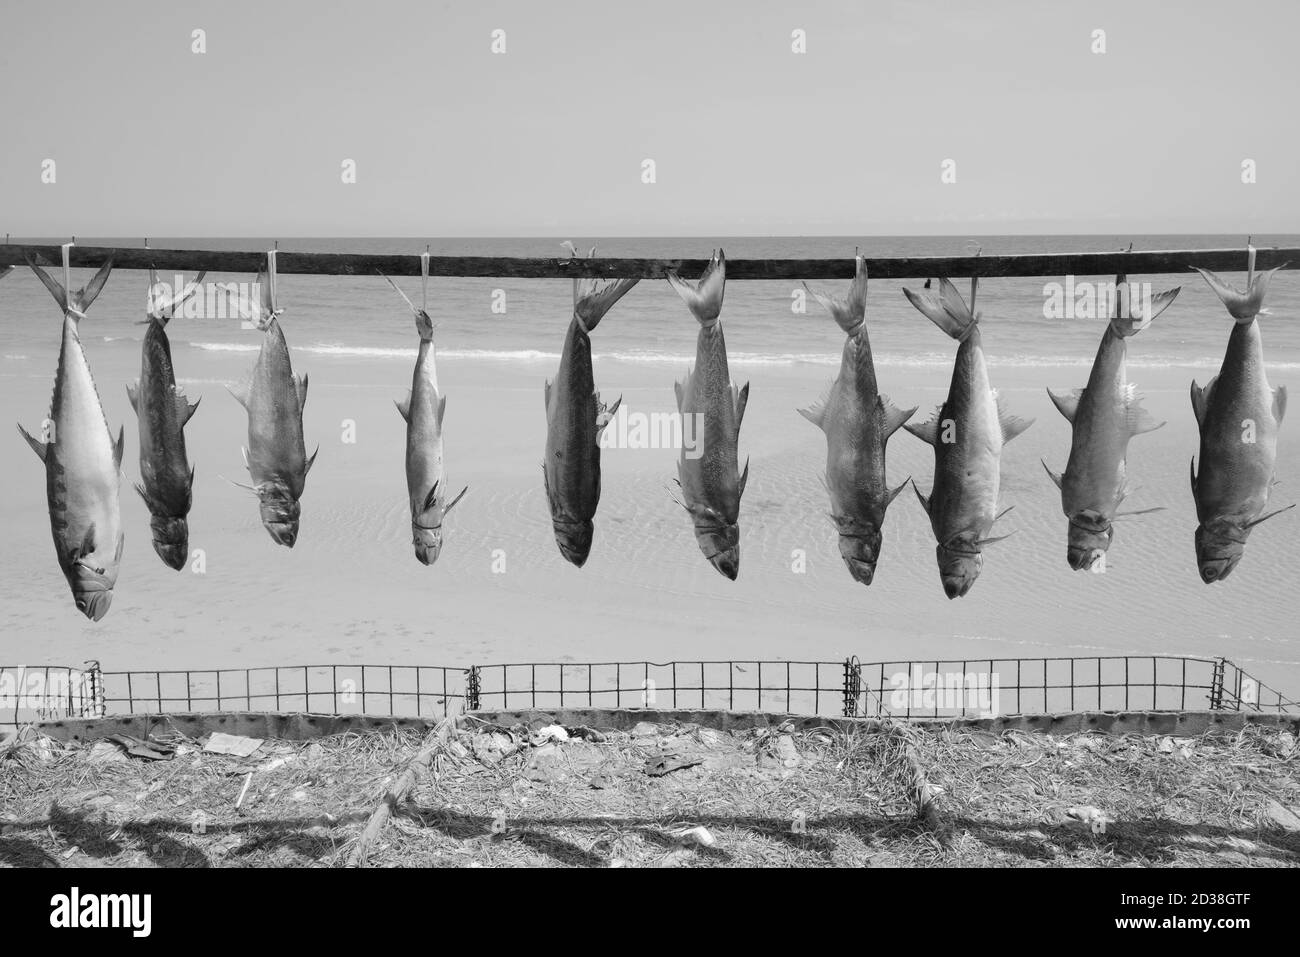 Immagine di pesci appena catturati legati e impiccati a. asciutto per la conservazione vicino alla costa della spiaggia Foto Stock